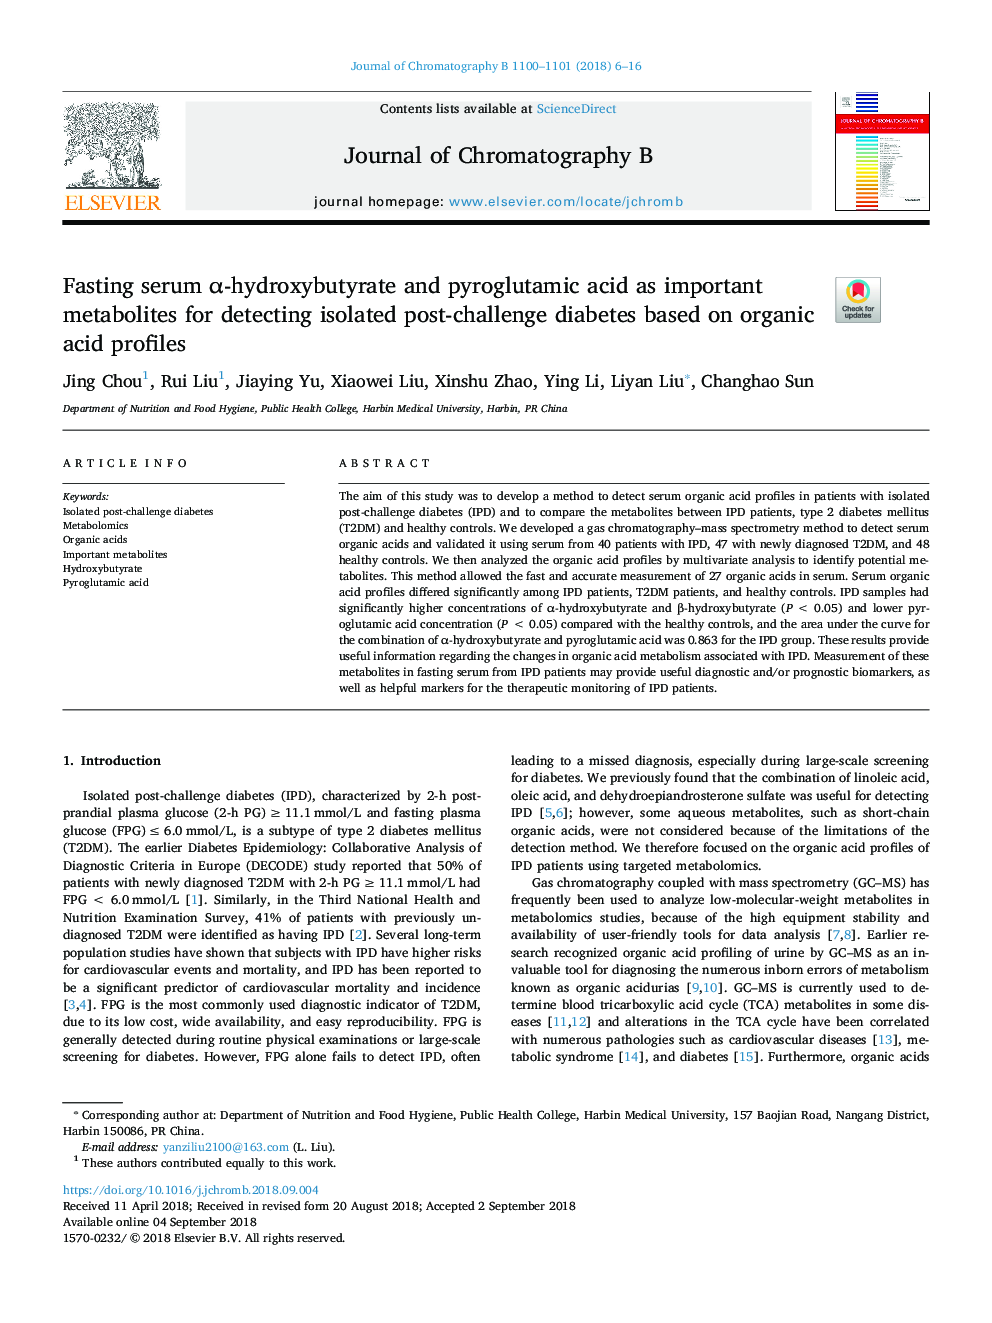 Fasting serum Î±âhydroxybutyrate and pyroglutamic acid as important metabolites for detecting isolated post-challenge diabetes based on organic acid profiles